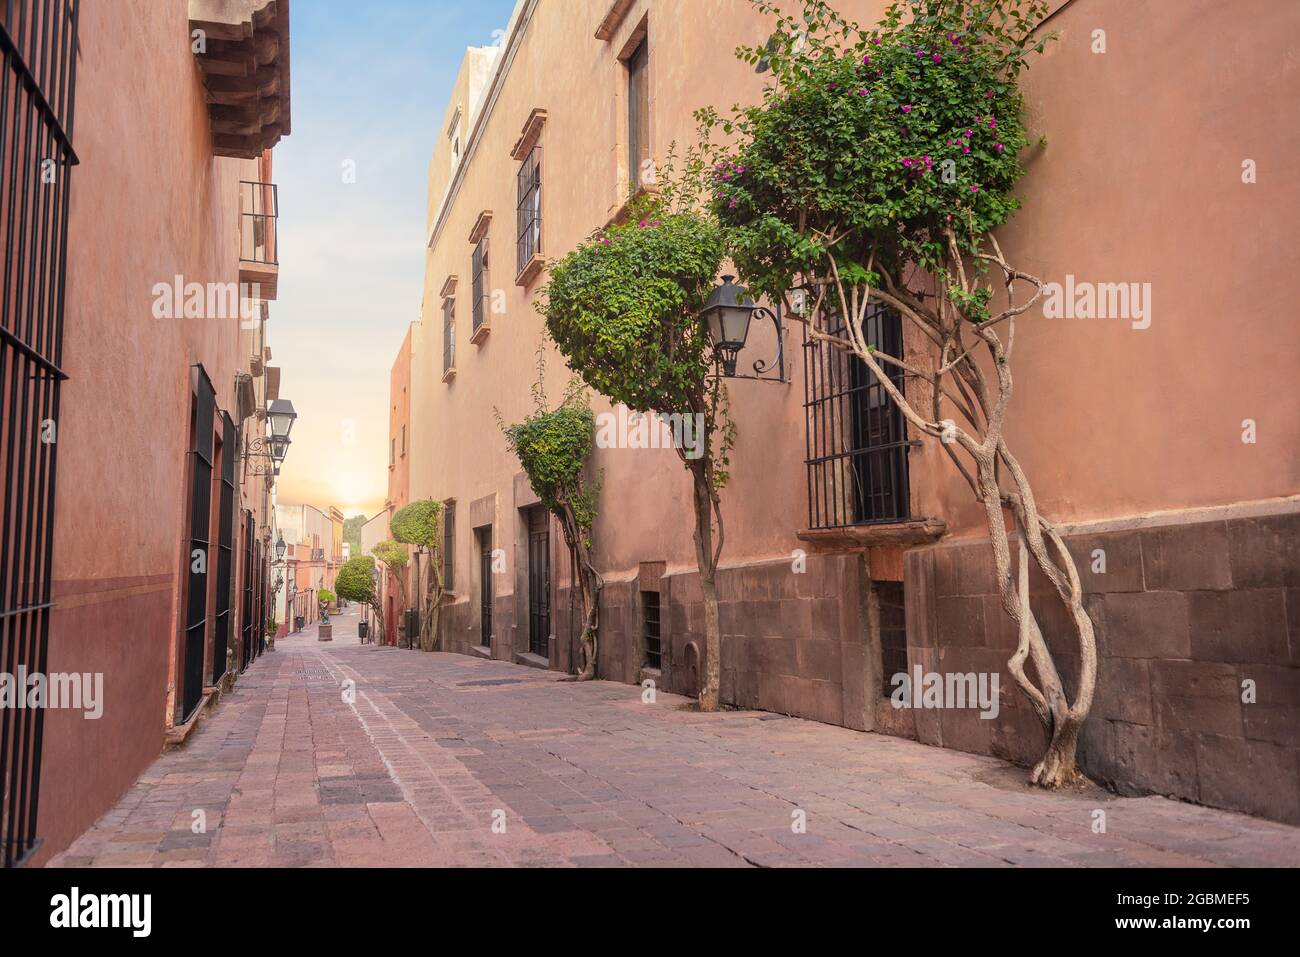 Rue touristique traditionnelle dans le centre de Queretaro, mexique, ville historique, personne, lever du soleil, architecture coloniale Banque D'Images